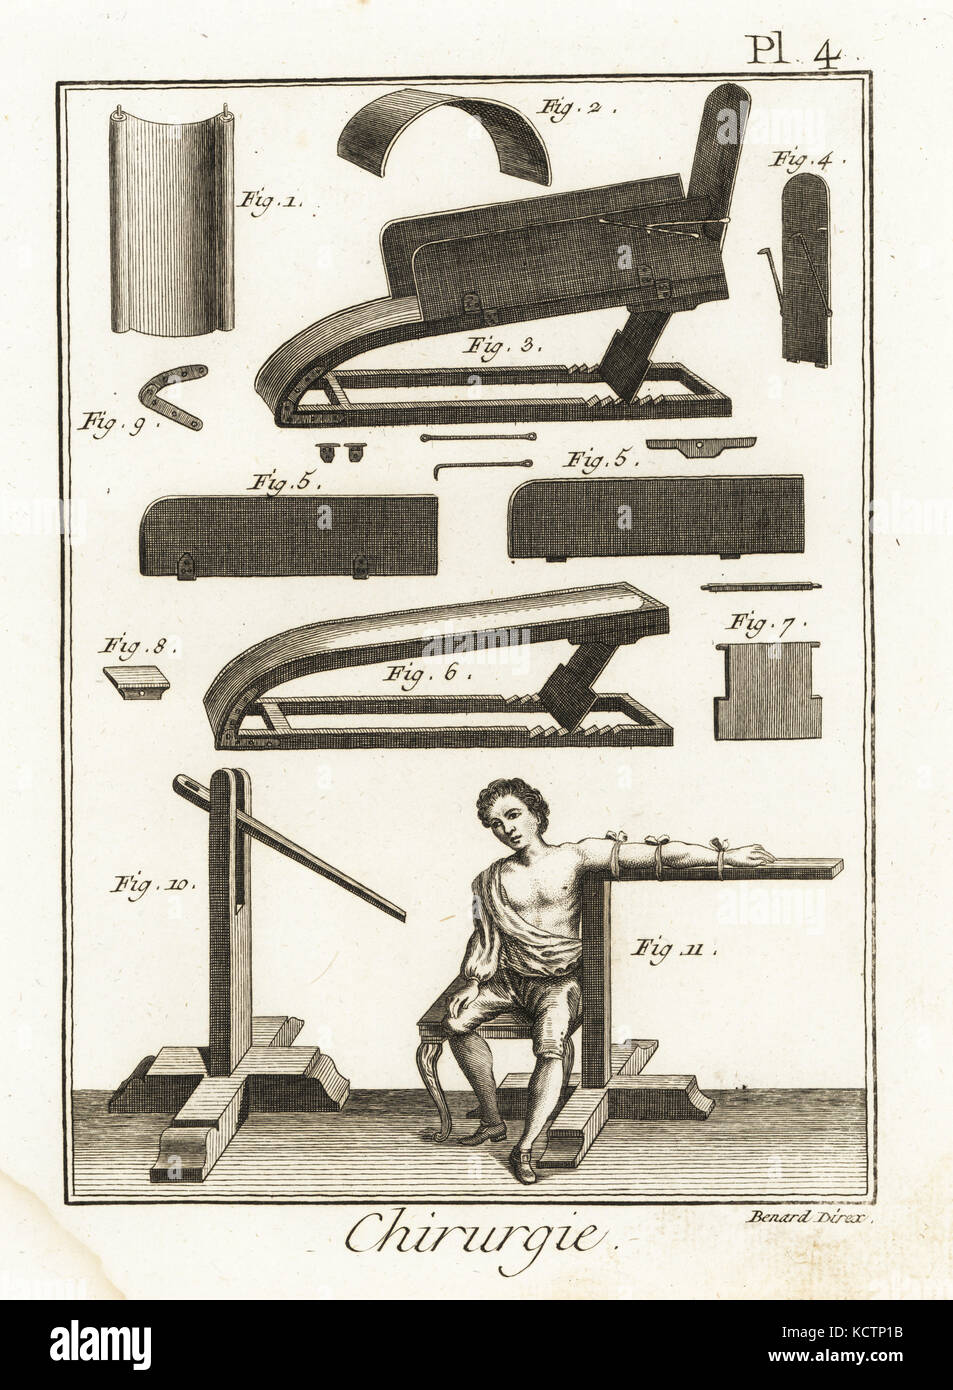 Chirurgische Geräte, einschließlich einer Maschine für komplexe Knochenbrüche 3-9, und Maschine für eine verschobene Arm 10,11. Kupferstich von Robert Benard von Denis Diderots Enzyklopädie, Pellets, Genf, 1779. Stockfoto